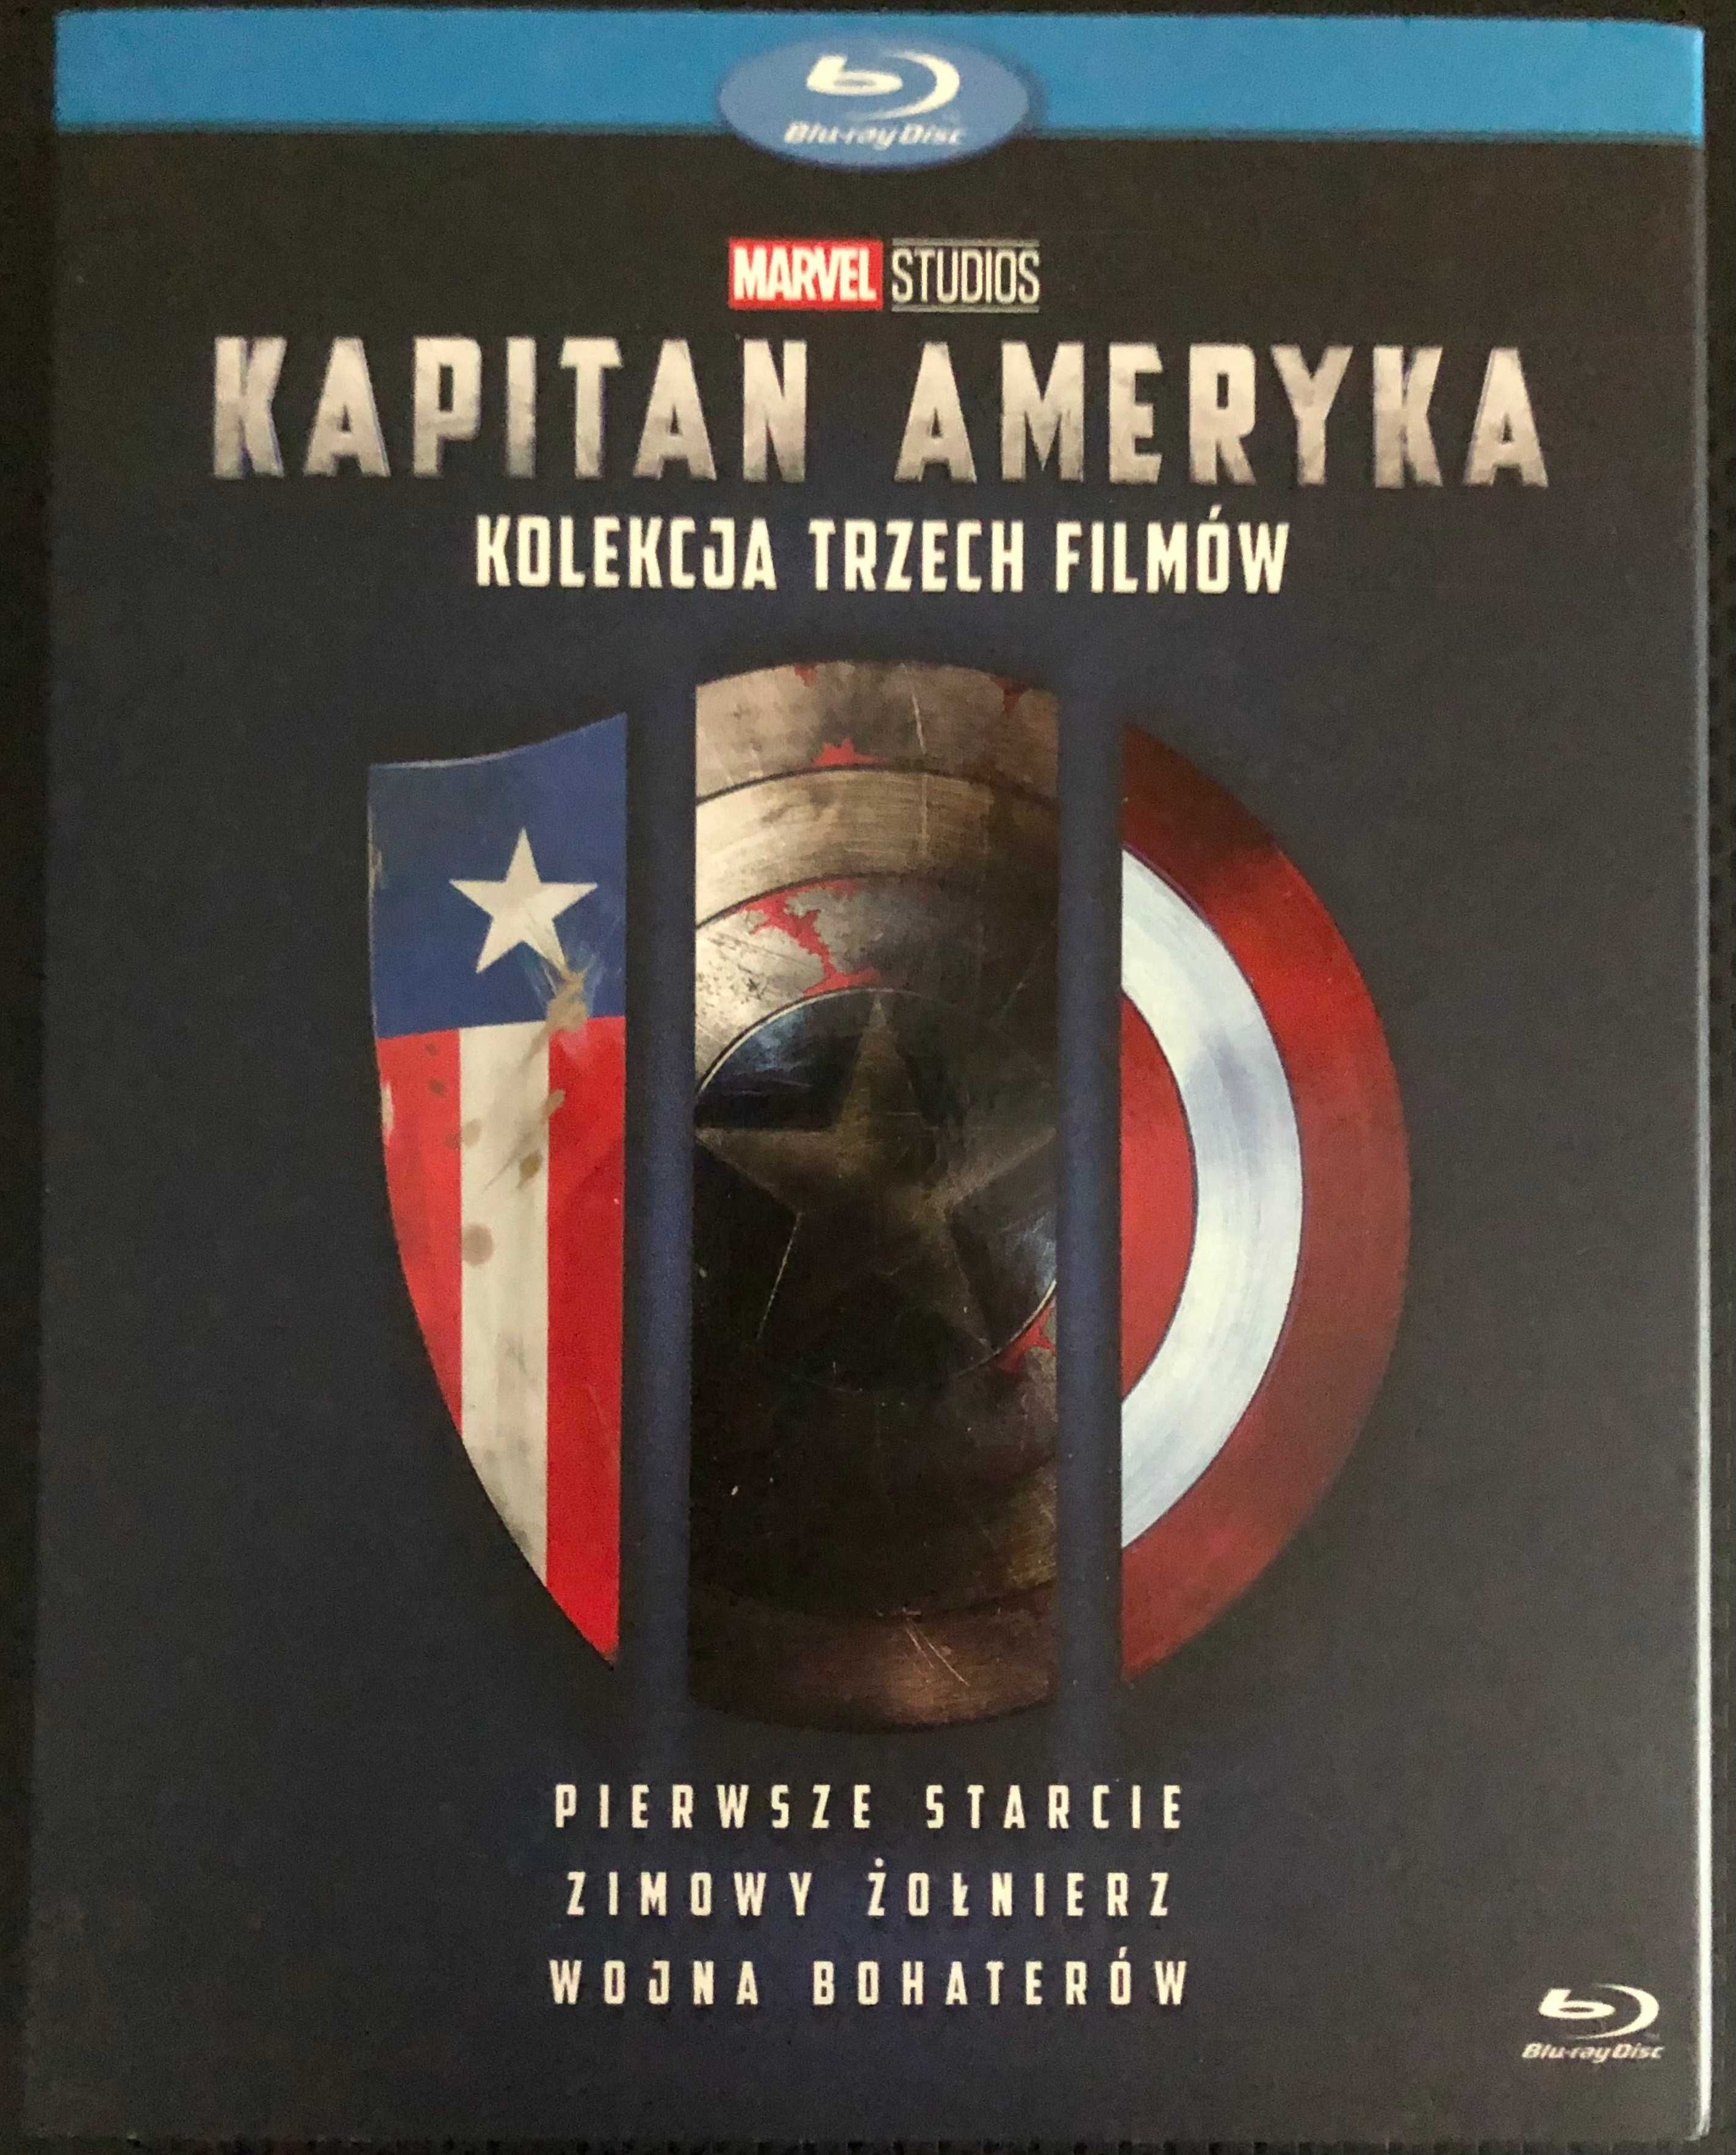 Kapitan Ameryka Trylogia Kolekcja 3 Filmów Blu-ray PL Polskie Wydanie